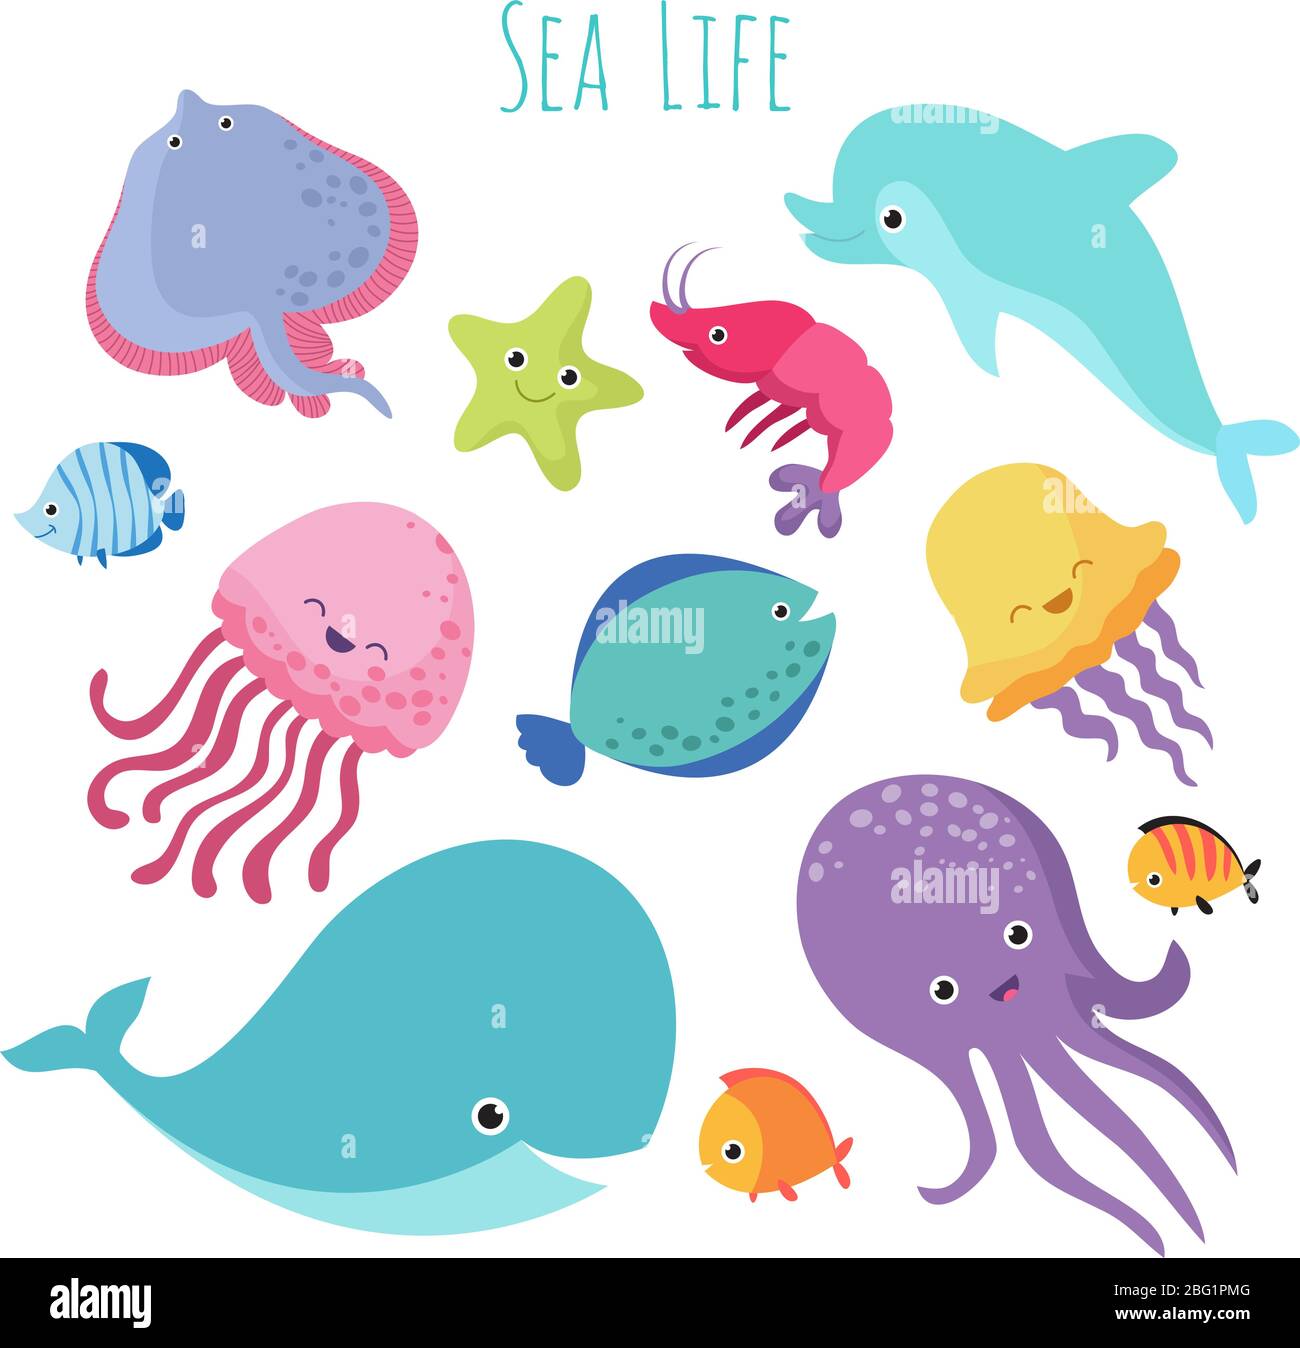 Cute baby pesci di mare. Collezione di animali subacquei cartoni animati vettoriali. Meduse e stelle marine, oceano e vita marina illustrazione Illustrazione Vettoriale